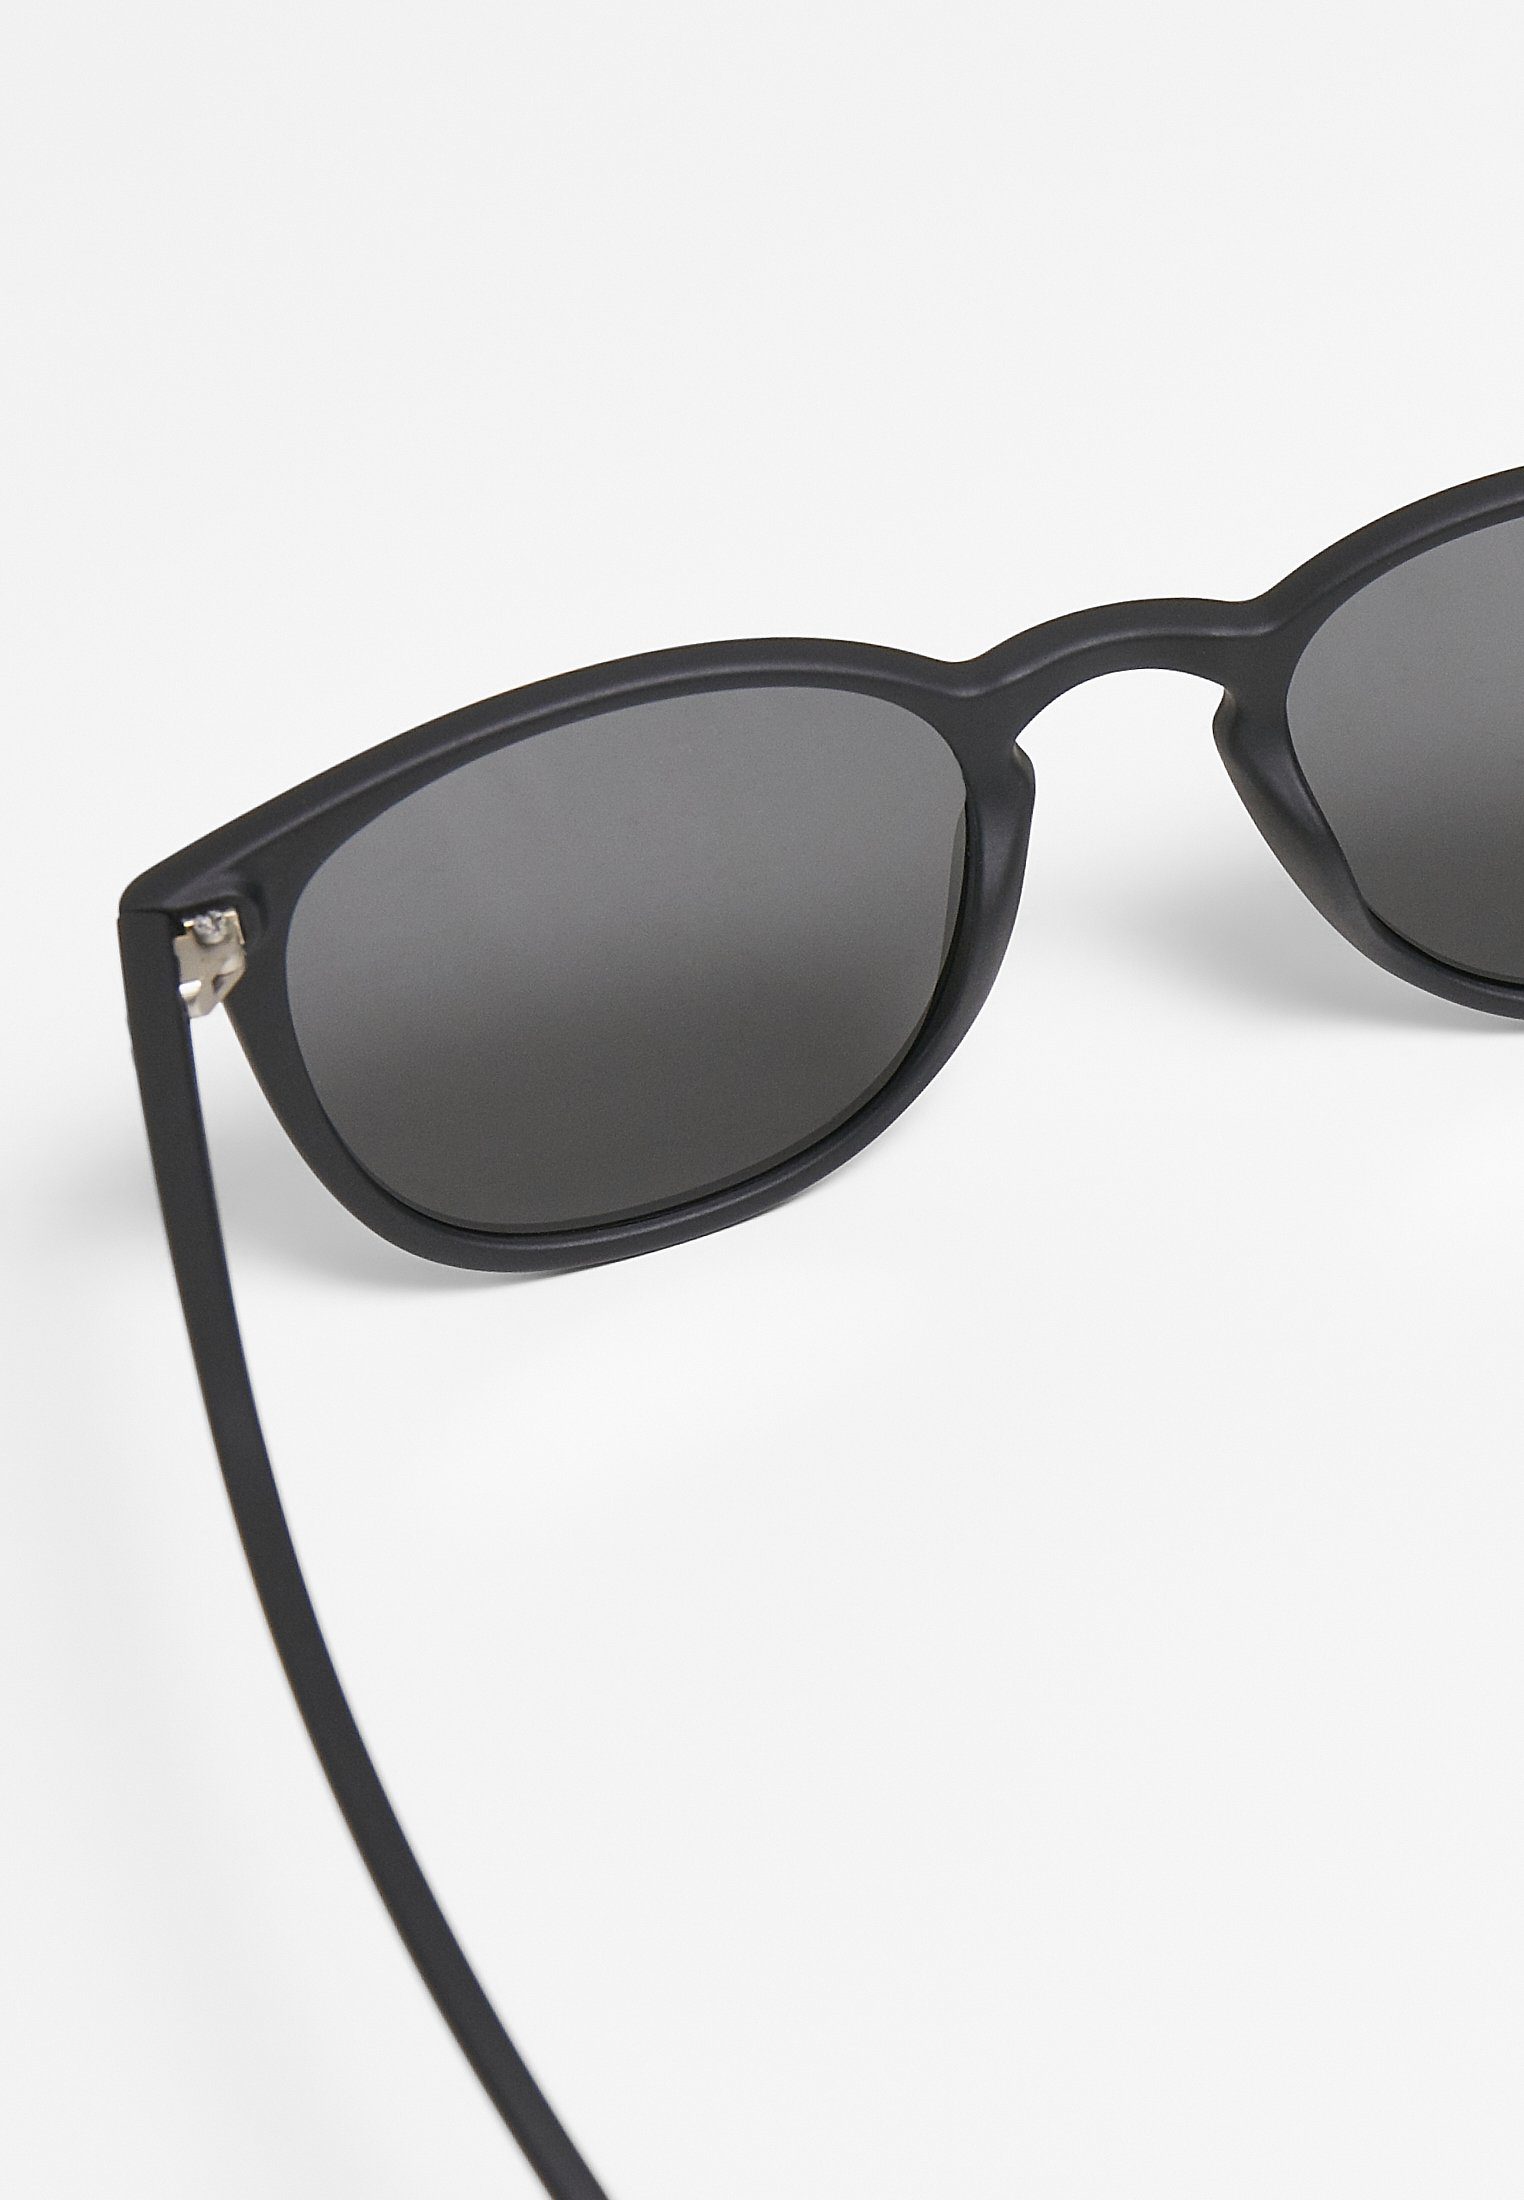 Arthur UC CLASSICS Accessoires Sunglasses Sonnenbrille black/grey URBAN